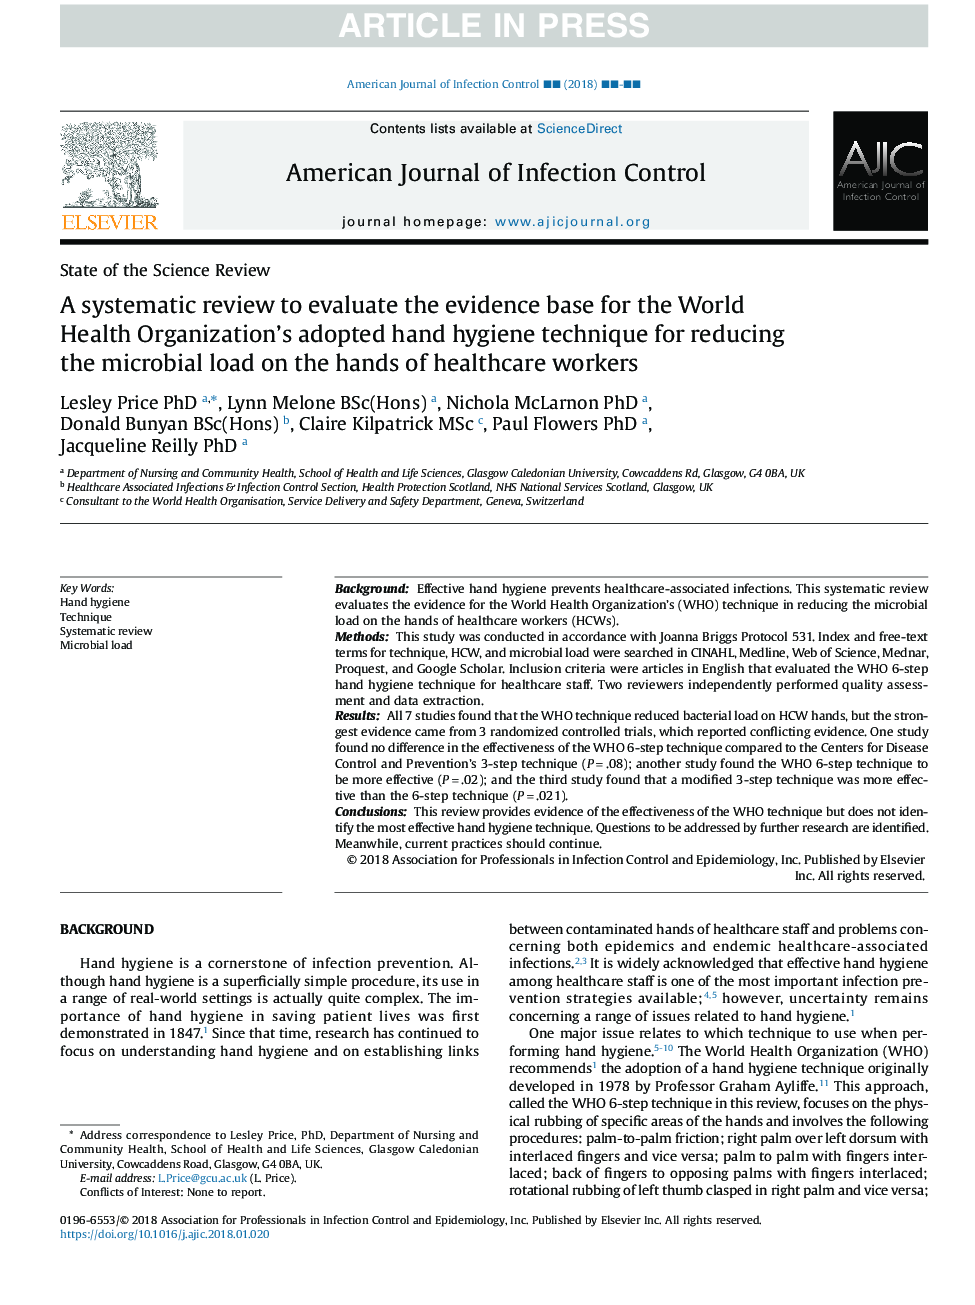 یک بررسی سیستماتیک برای ارزیابی پایگاه شواهدی برای روش بهداشتی دستانی که توسط سازمان بهداشت جهانی برای کاهش بار میکروبی در دست کارکنان مراقبت های بهداشتی 